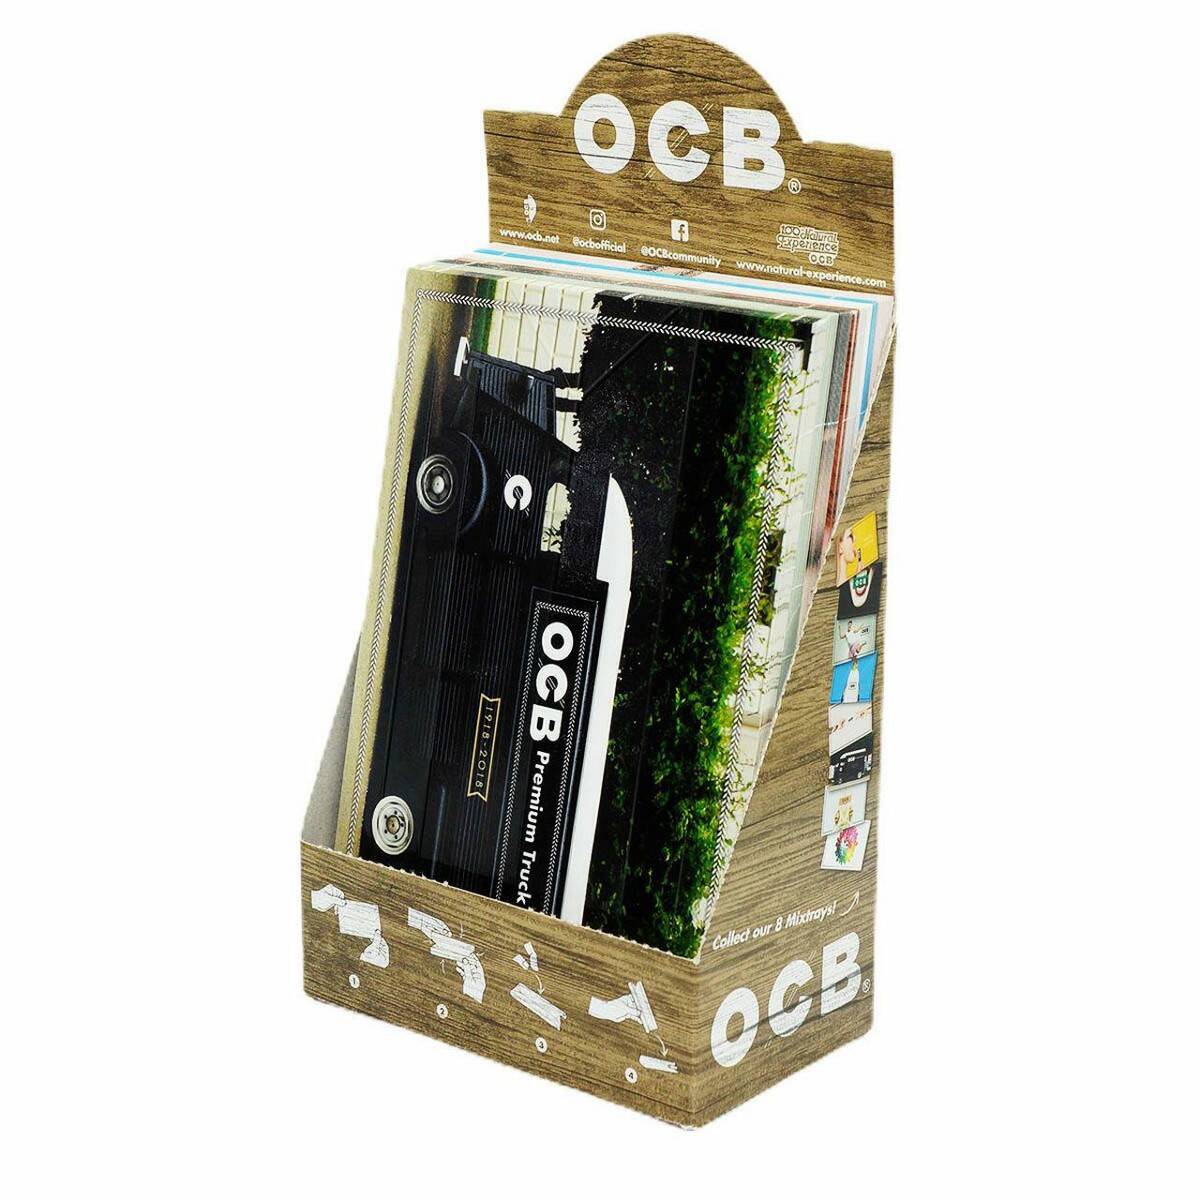 OCB Tobacco cardboard